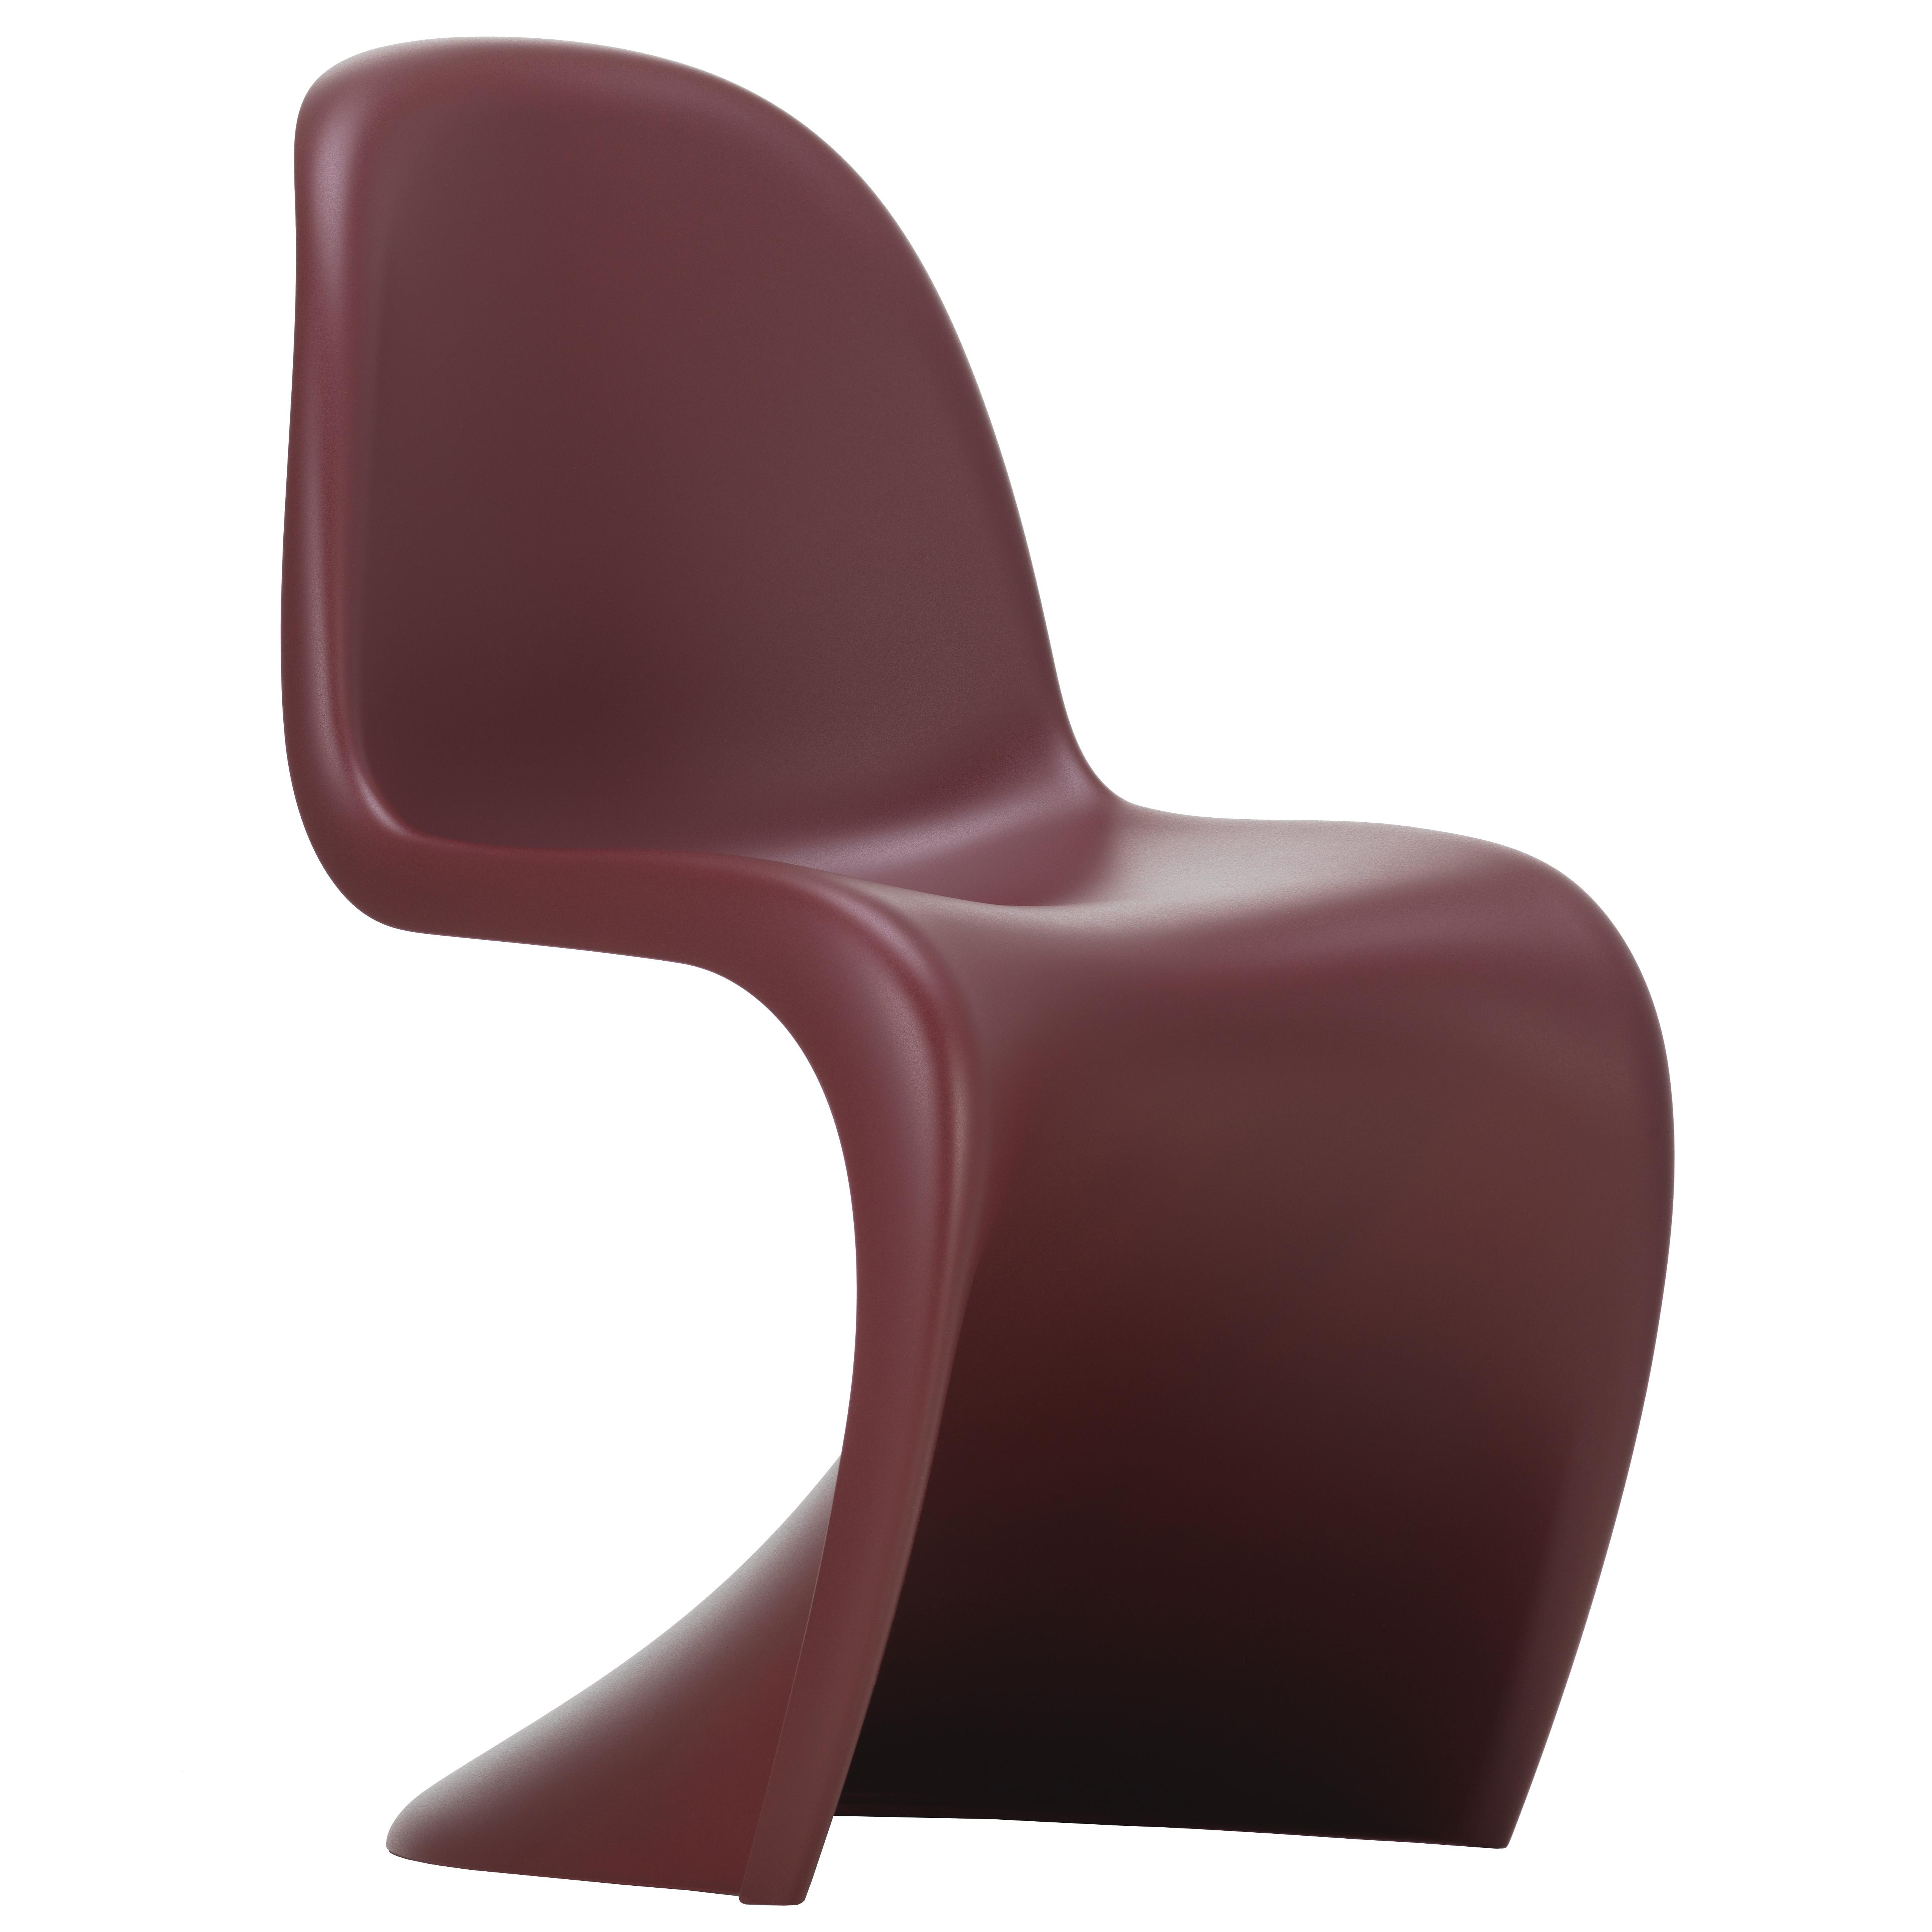 smaak Pakket Kantine Vitra Panton chair stoel (nieuwe zithoogte) diepzwart | Flinders